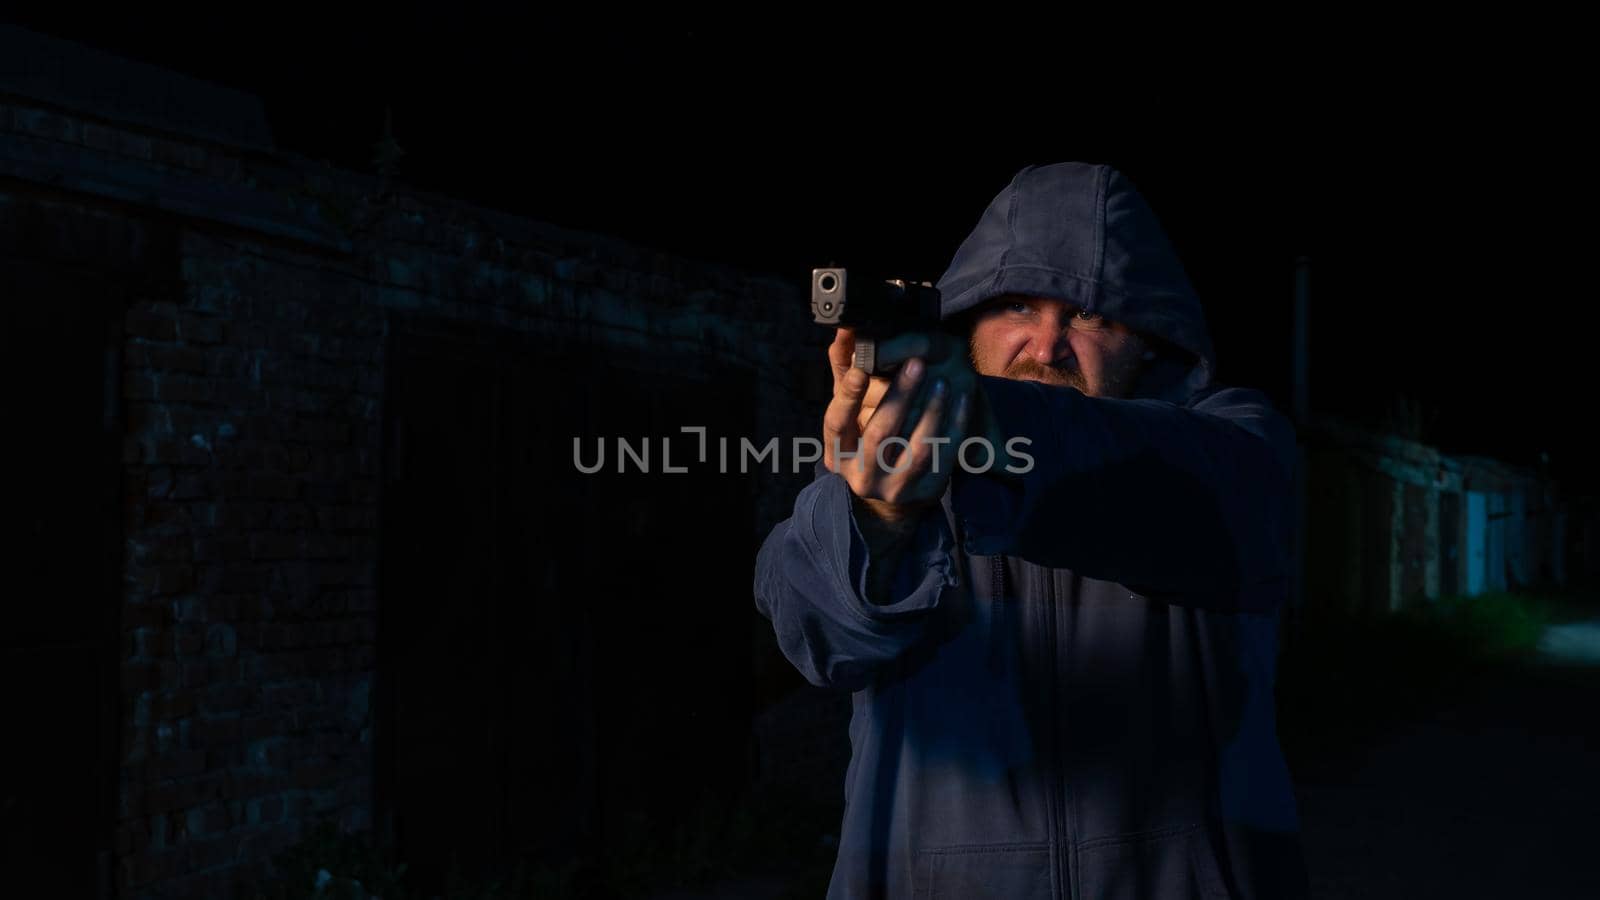 Caucasian man in a hood shoots a pistol